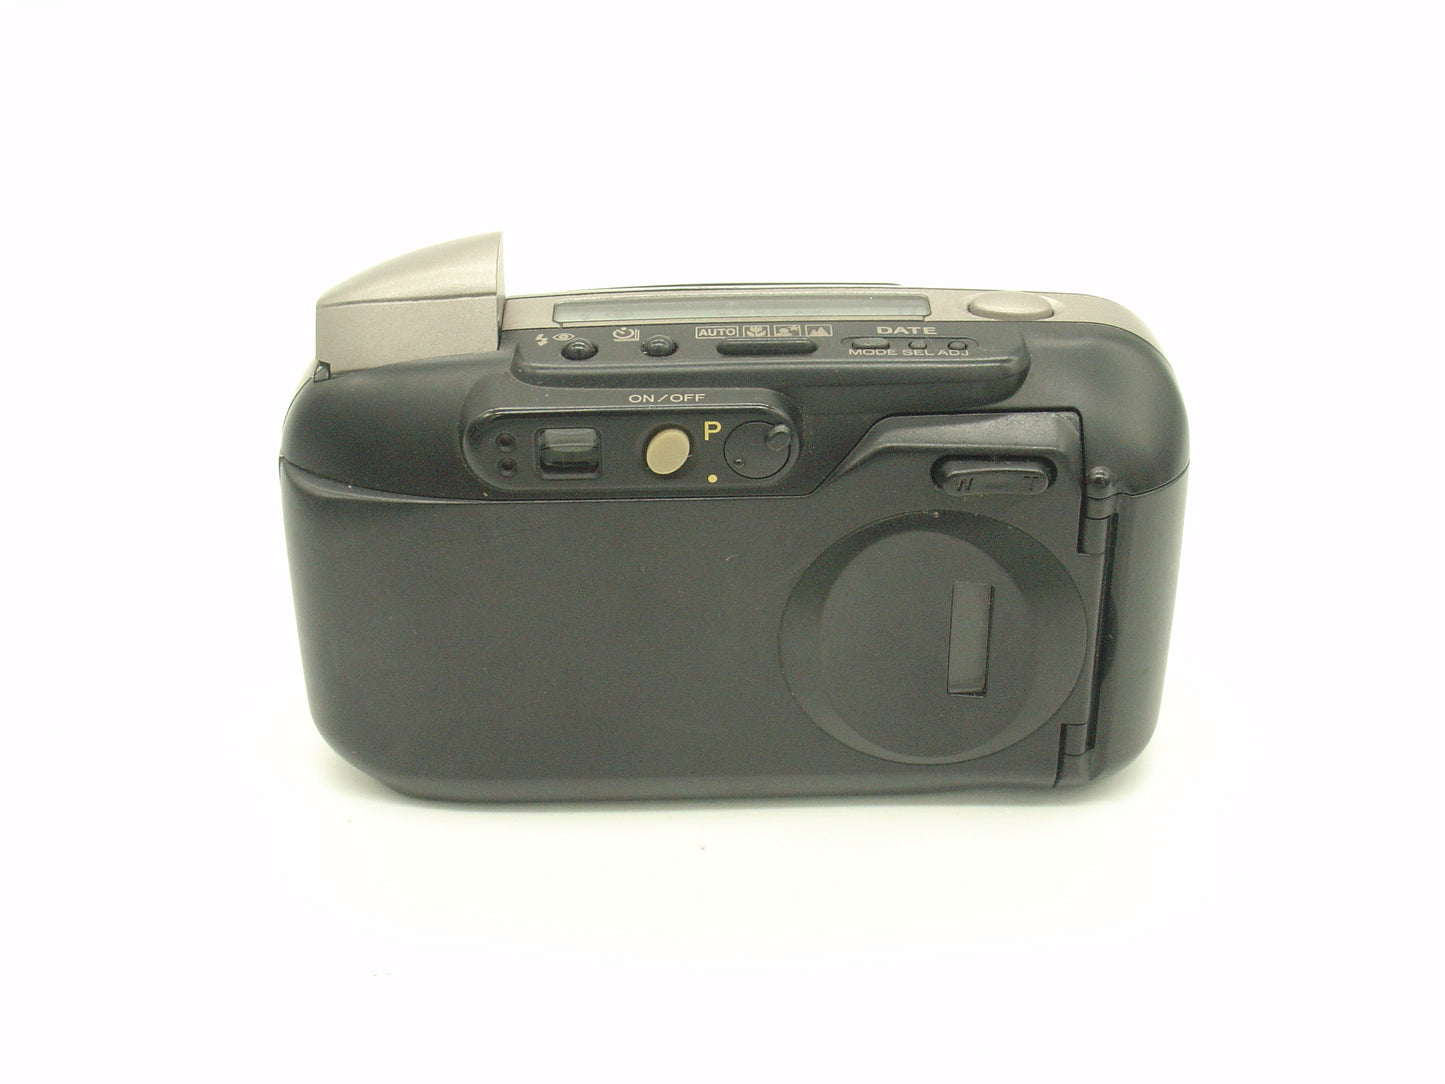 Minolta Capios 25 compact film camera